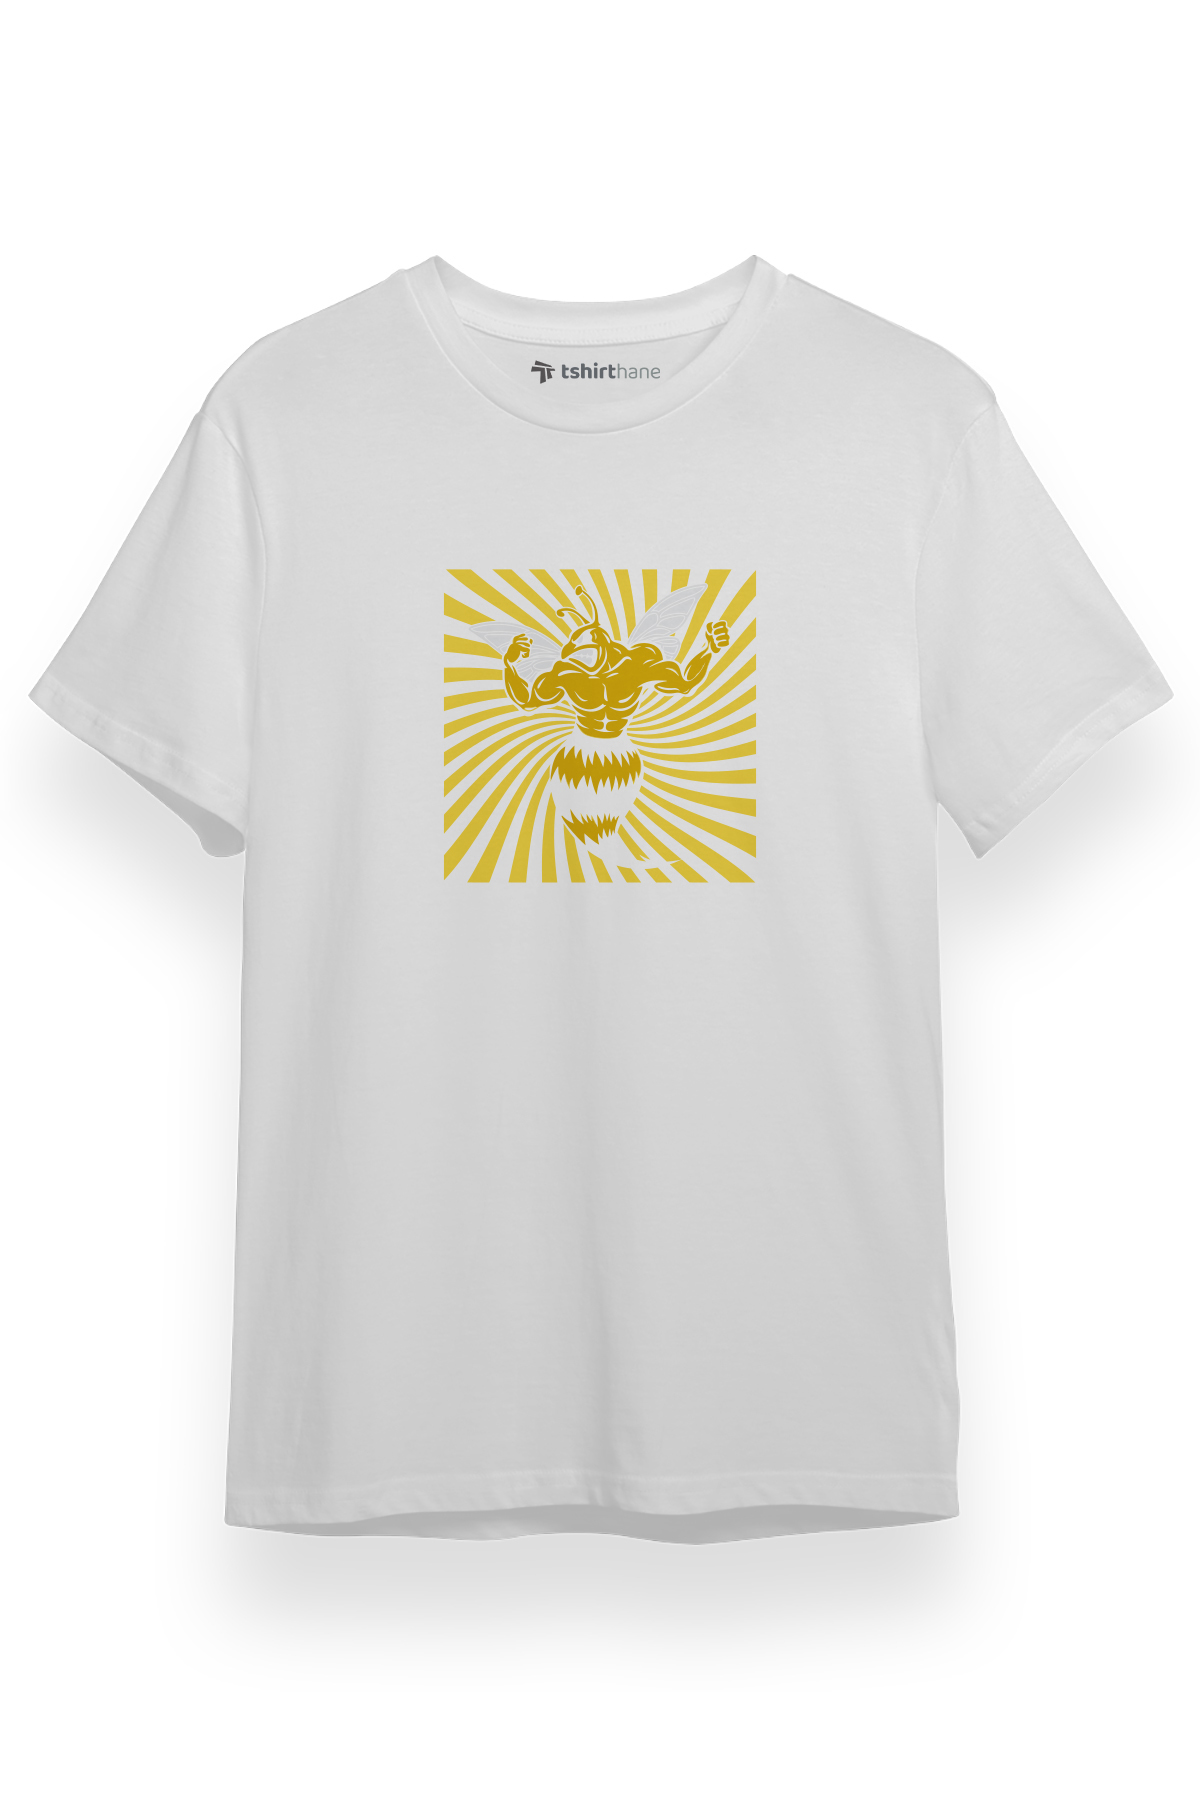 Yellow Jackets Mascot Symbol Beyaz Kısa kol Erkek Tshirt